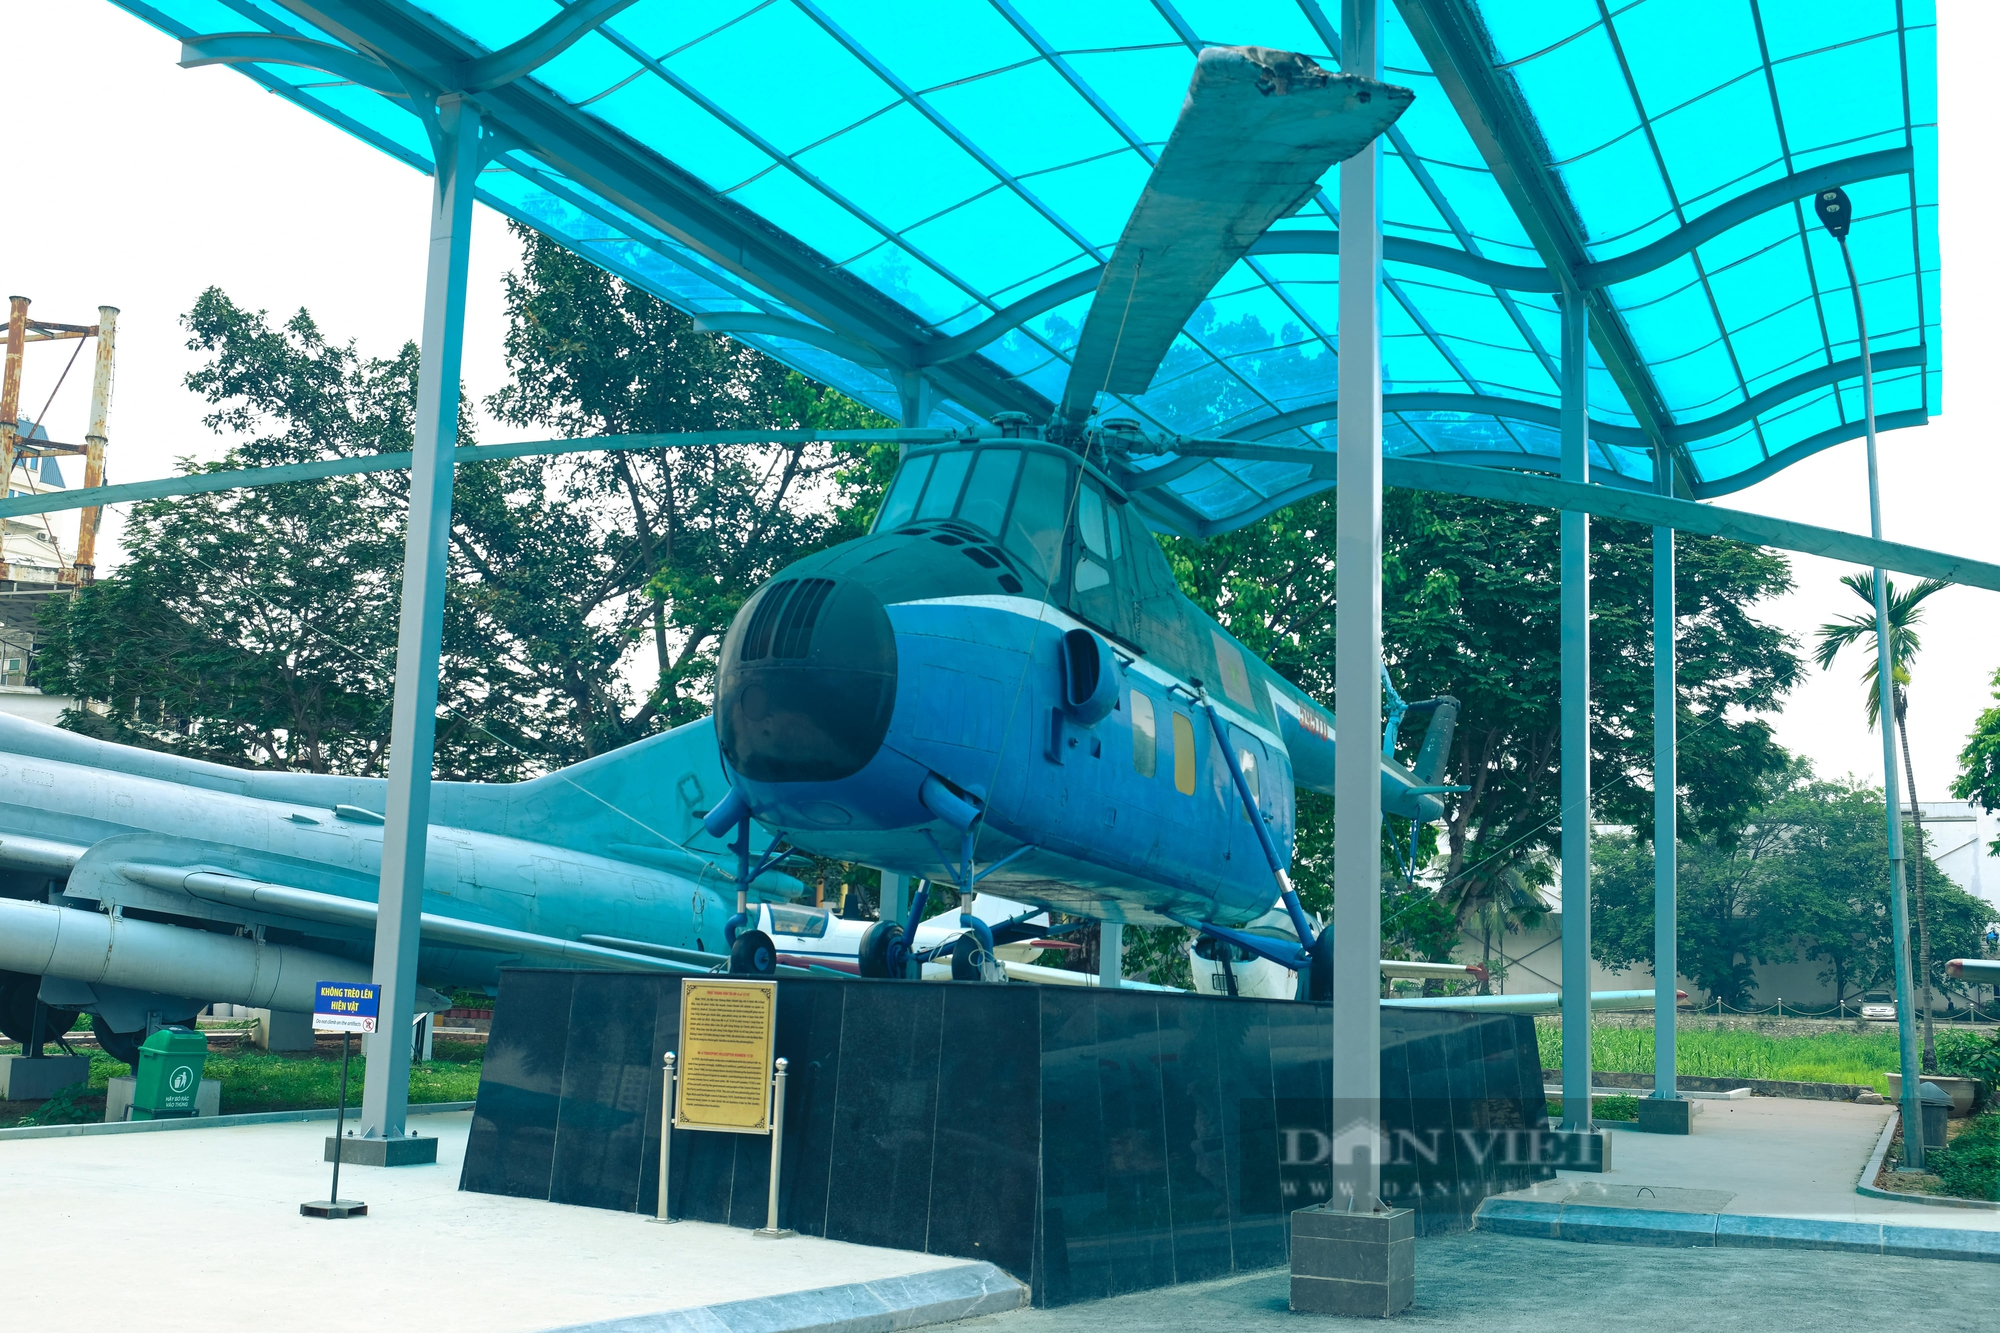 Trực thăng vận tải Mi-4 từng tháp tùng Bác Hồ đi công tác nhìn ra sao? - Ảnh 4.